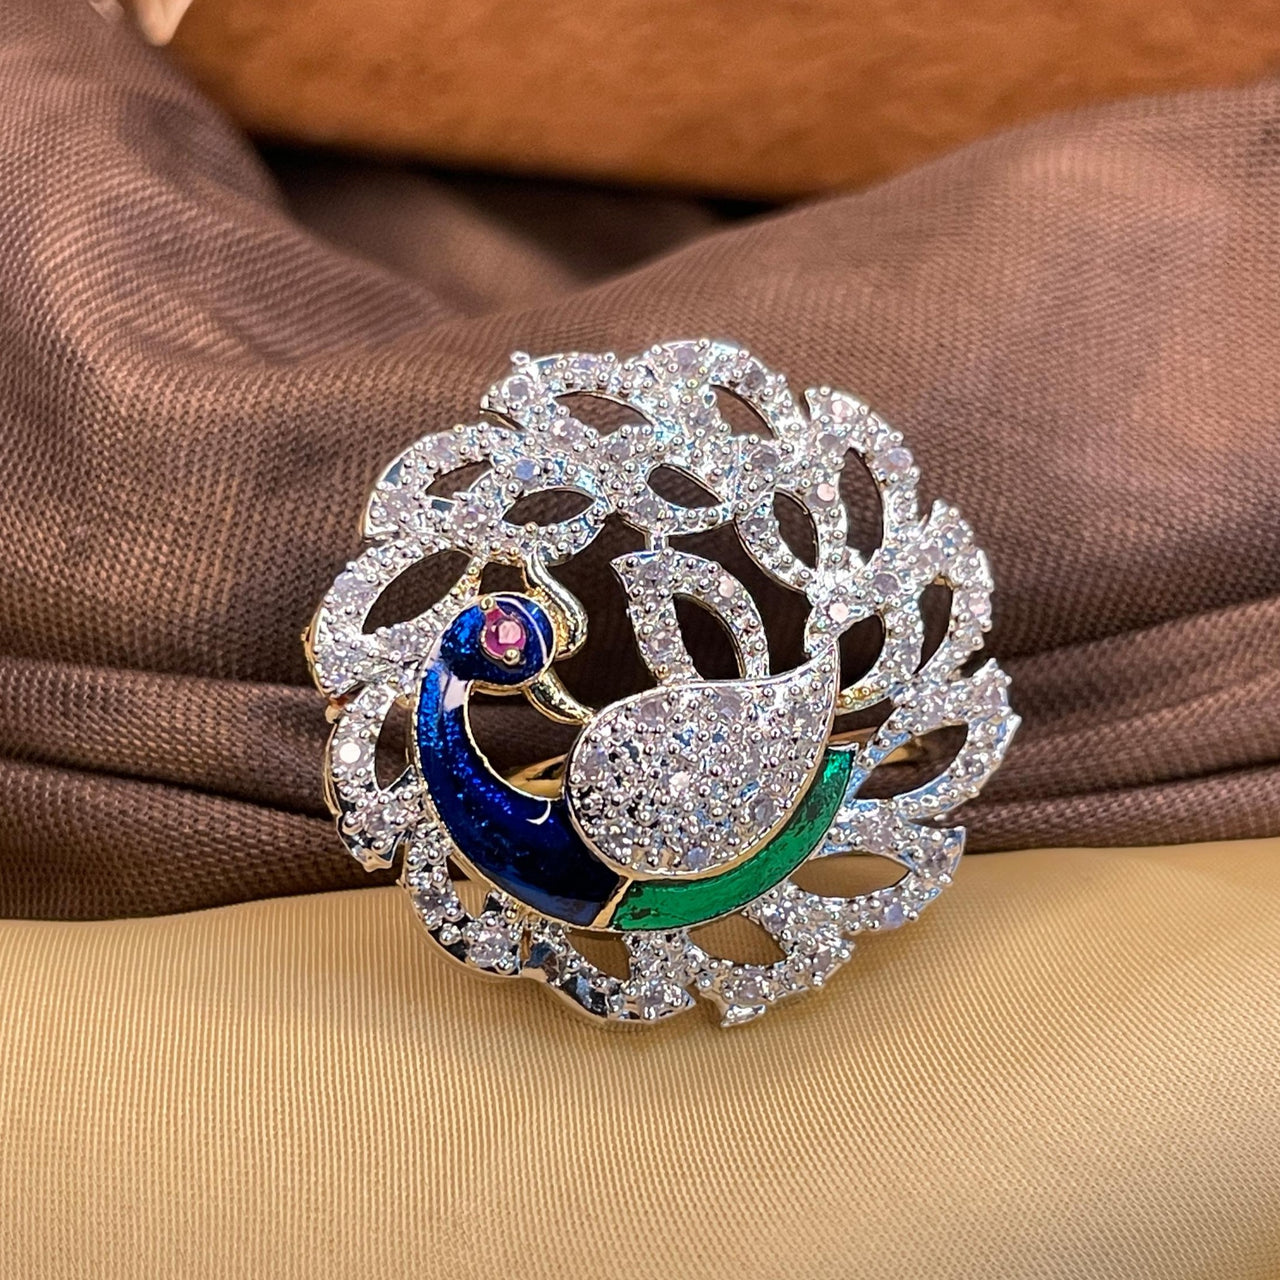 Oxidised Peacock Design Silver Ring - Eldorado